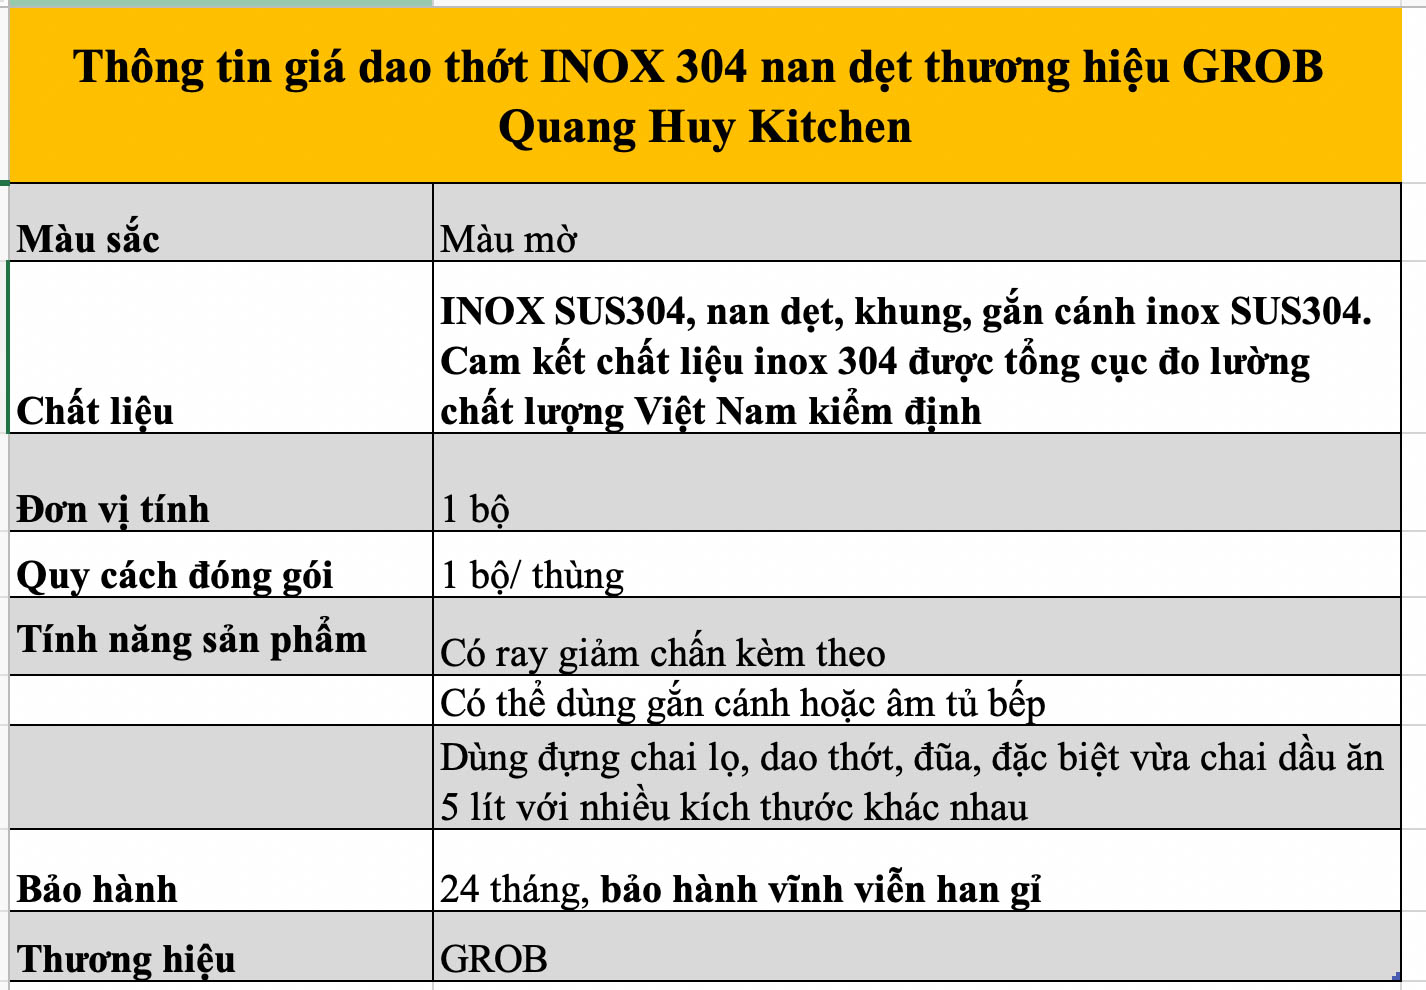 gia-dao-thot-inox-304-nan-det